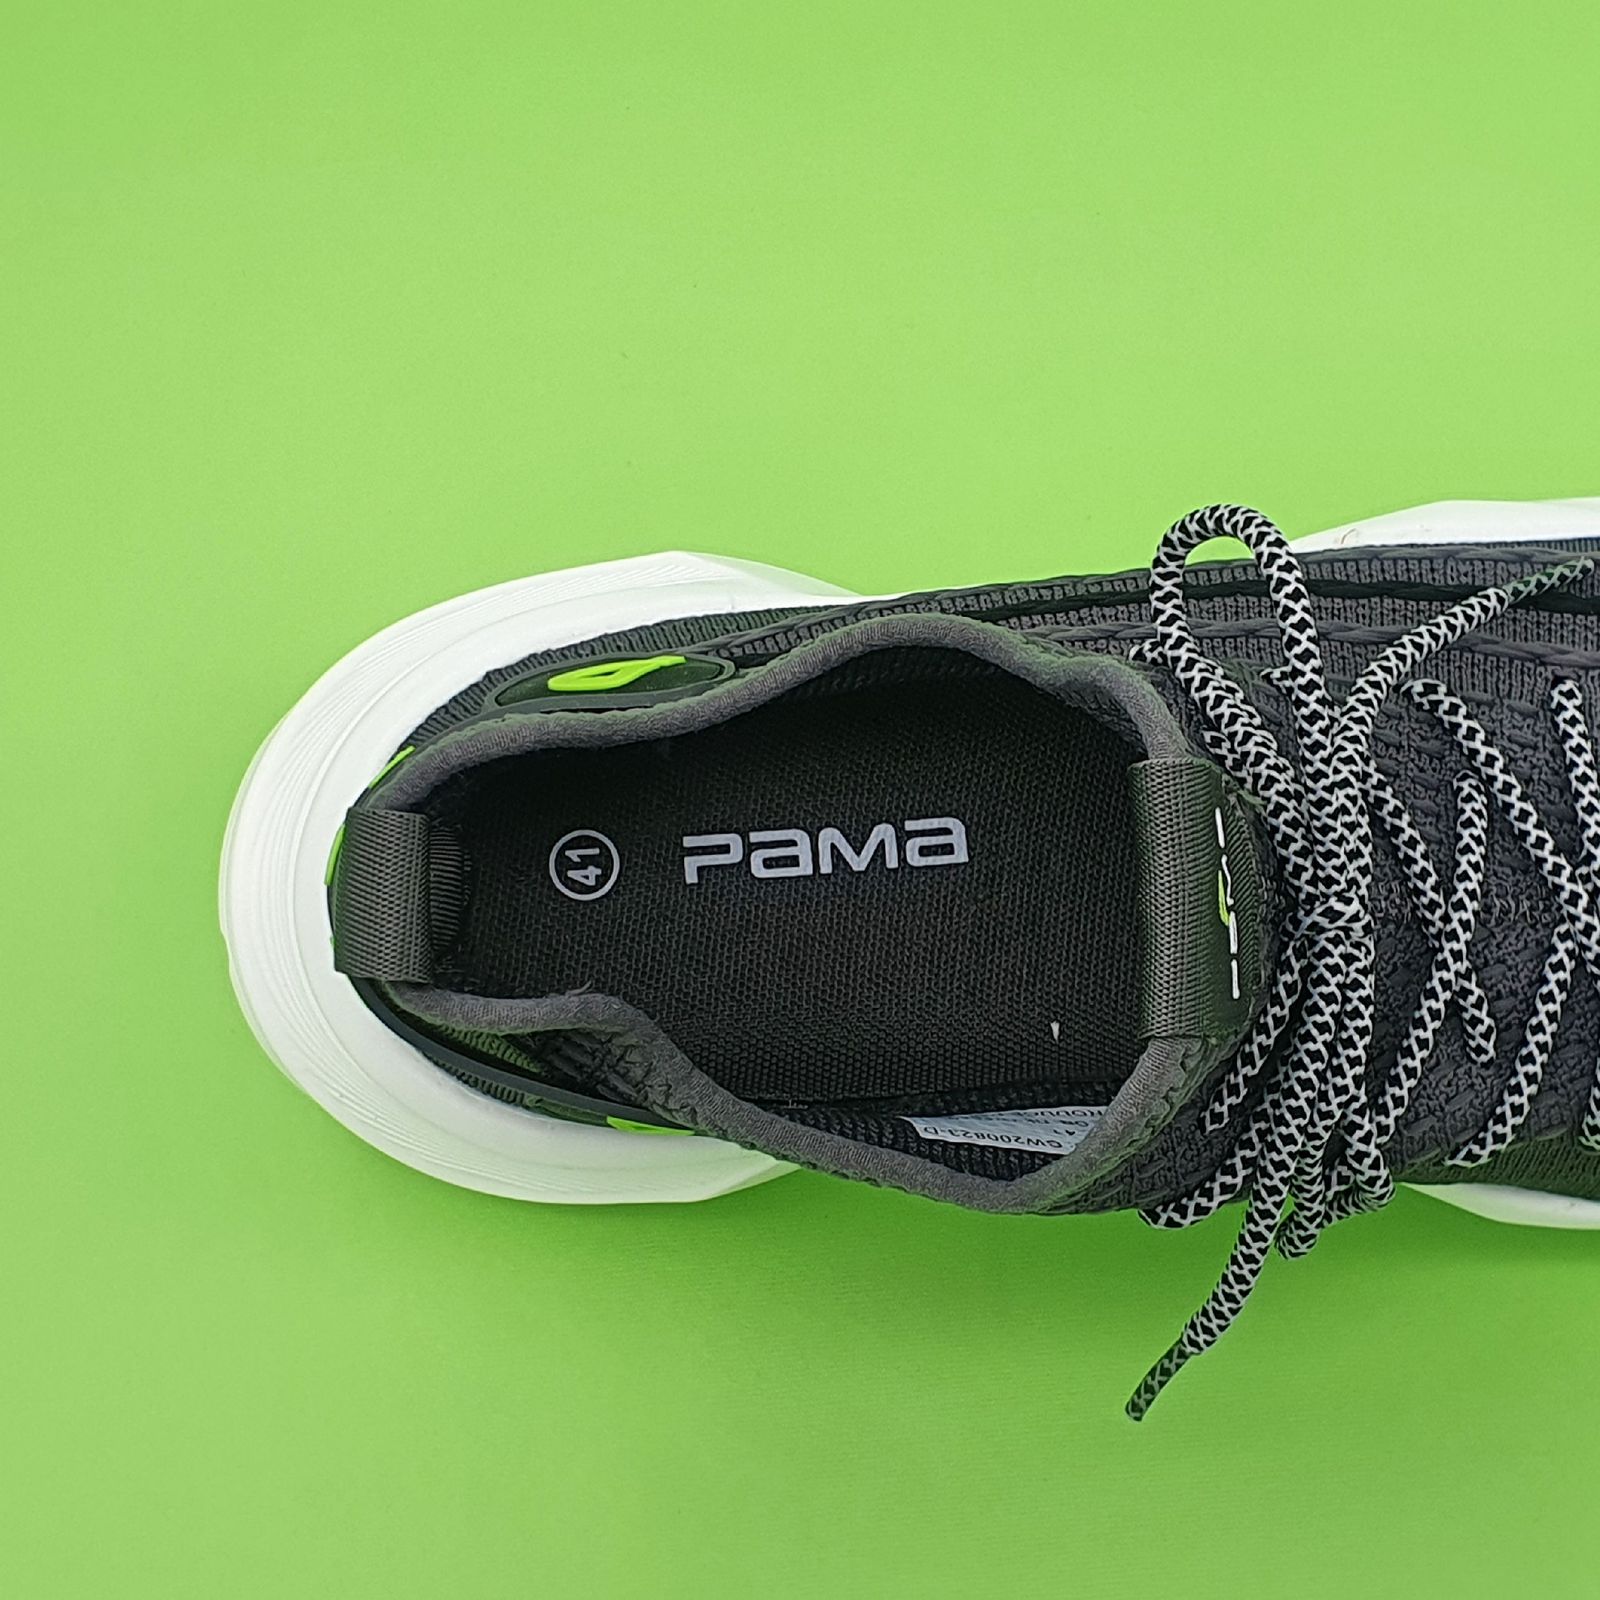 کفش پیاده روی مردانه پاما مدل VR-823 کد G1597 -  - 8